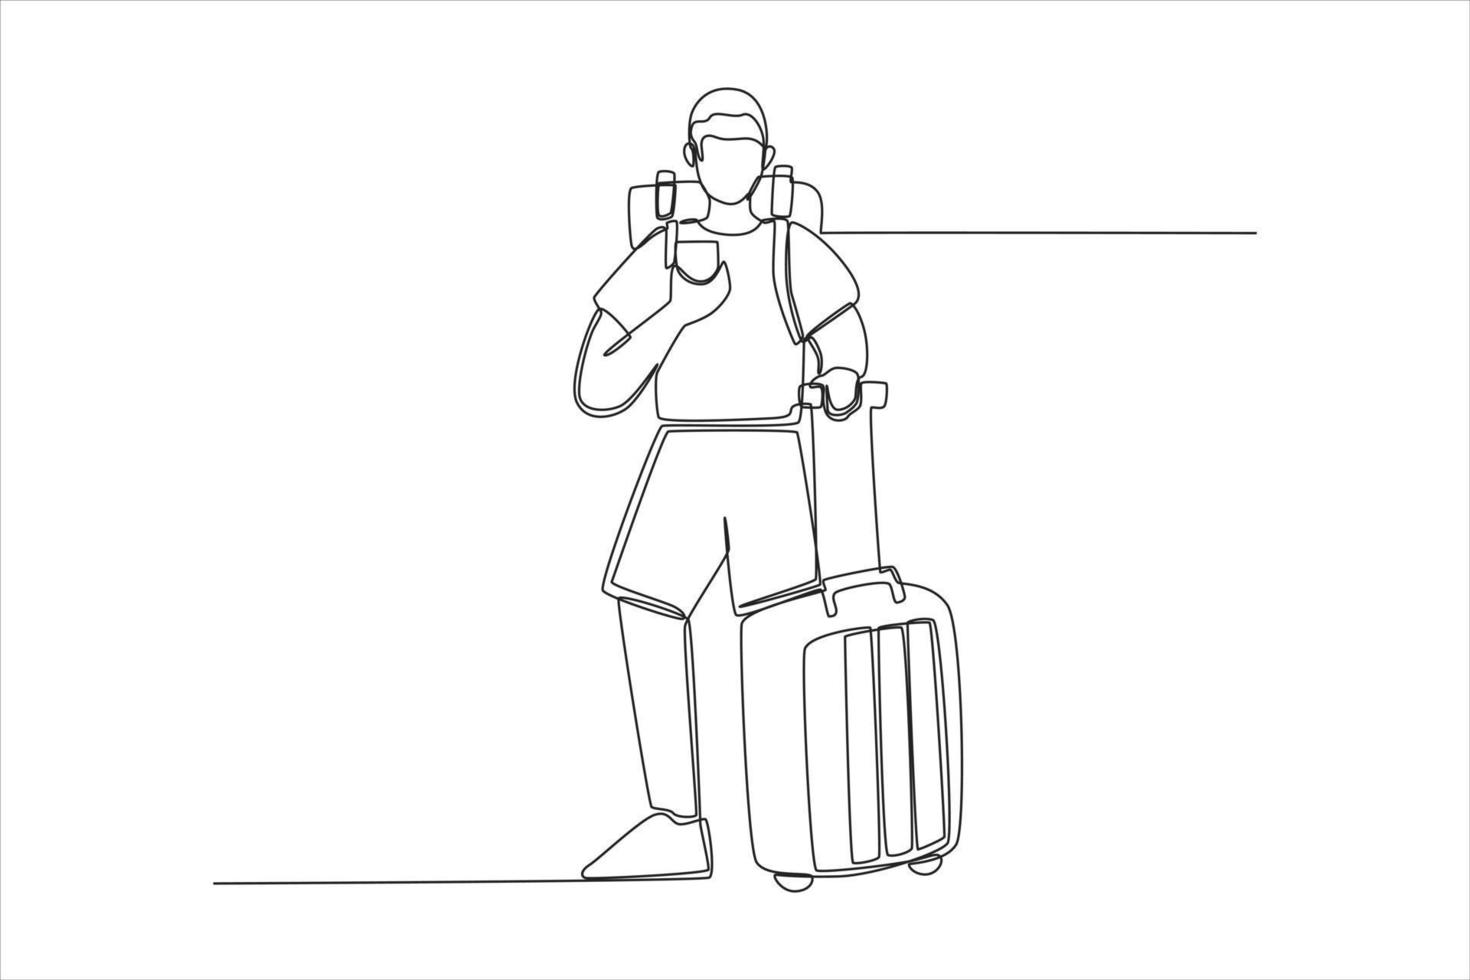 enkele een lijntekening reiziger man staande met koffer en tas op de rug. luchthaven activiteit concept. doorlopende lijn tekenen ontwerp grafische vectorillustratie. vector